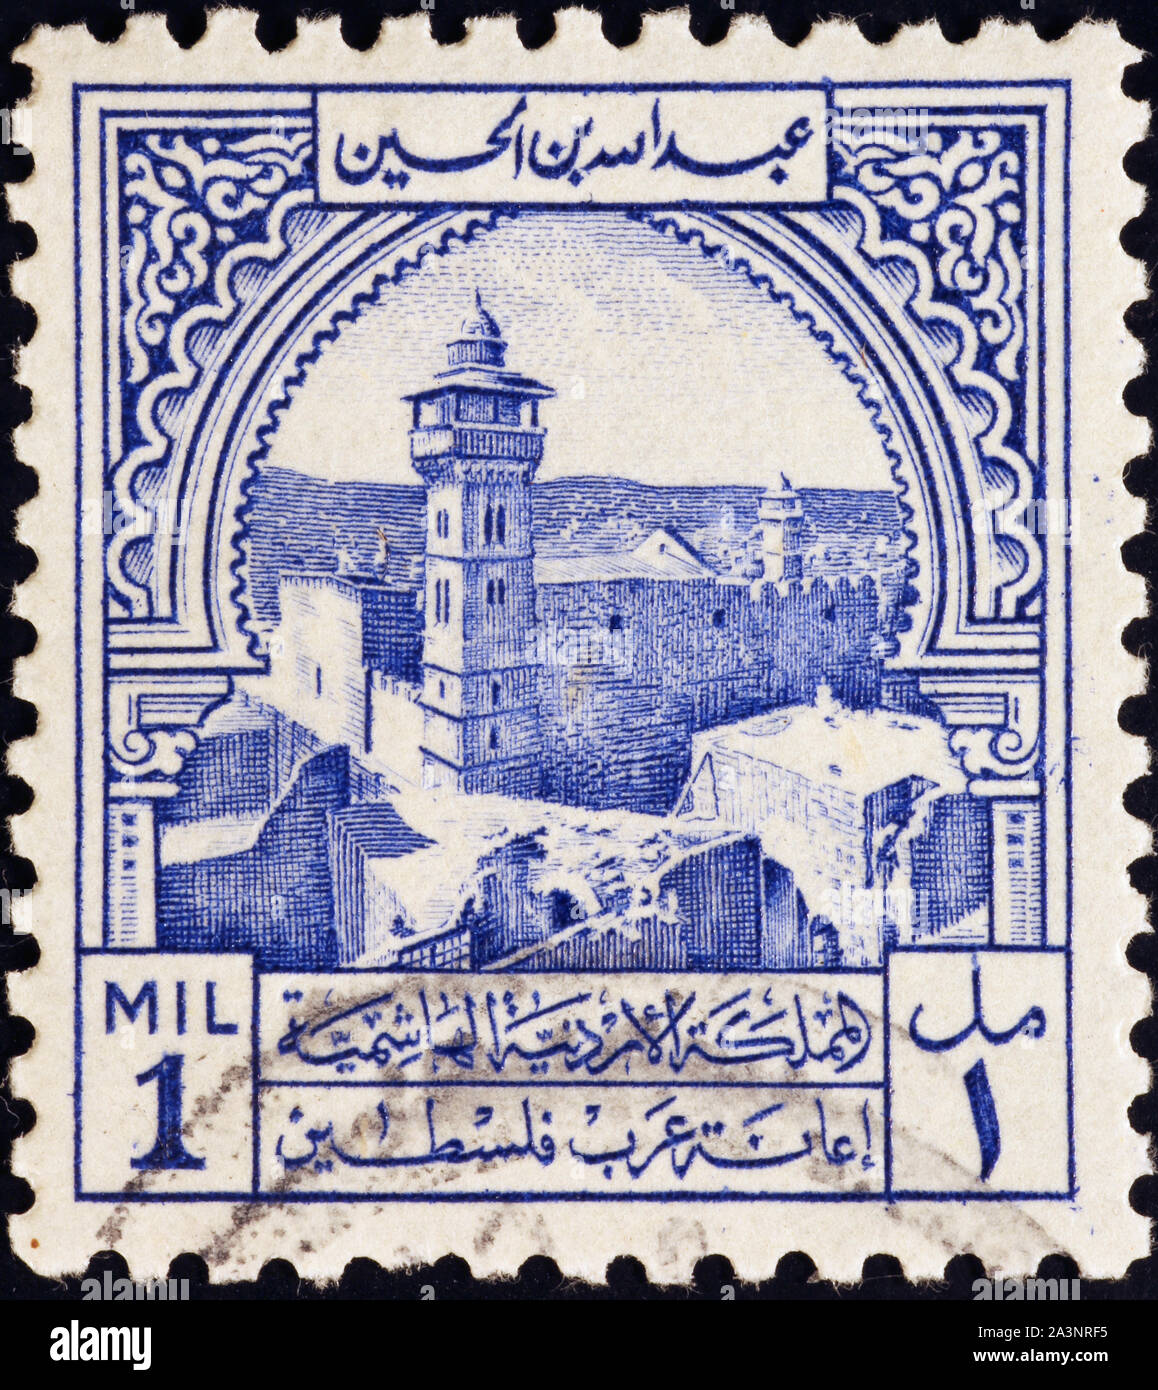 Minaret sur timbre ancien de Jordanie Banque D'Images